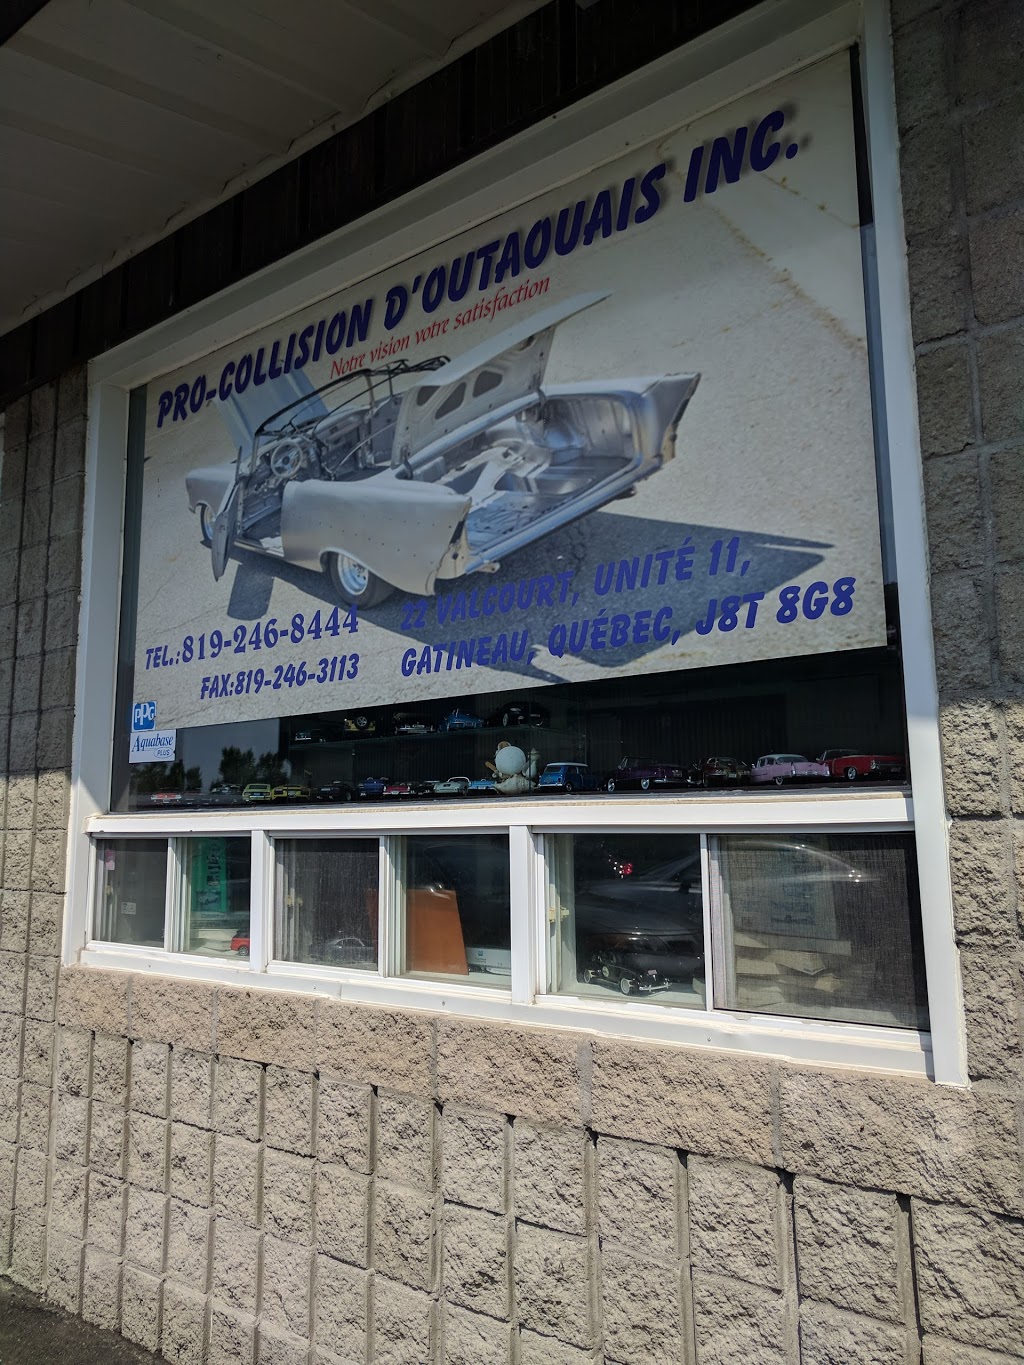 Pro Collision Outaouais Inc | 22 Rue de Valcourt, Gatineau, QC J8T 8G8, Canada | Phone: (819) 246-8444